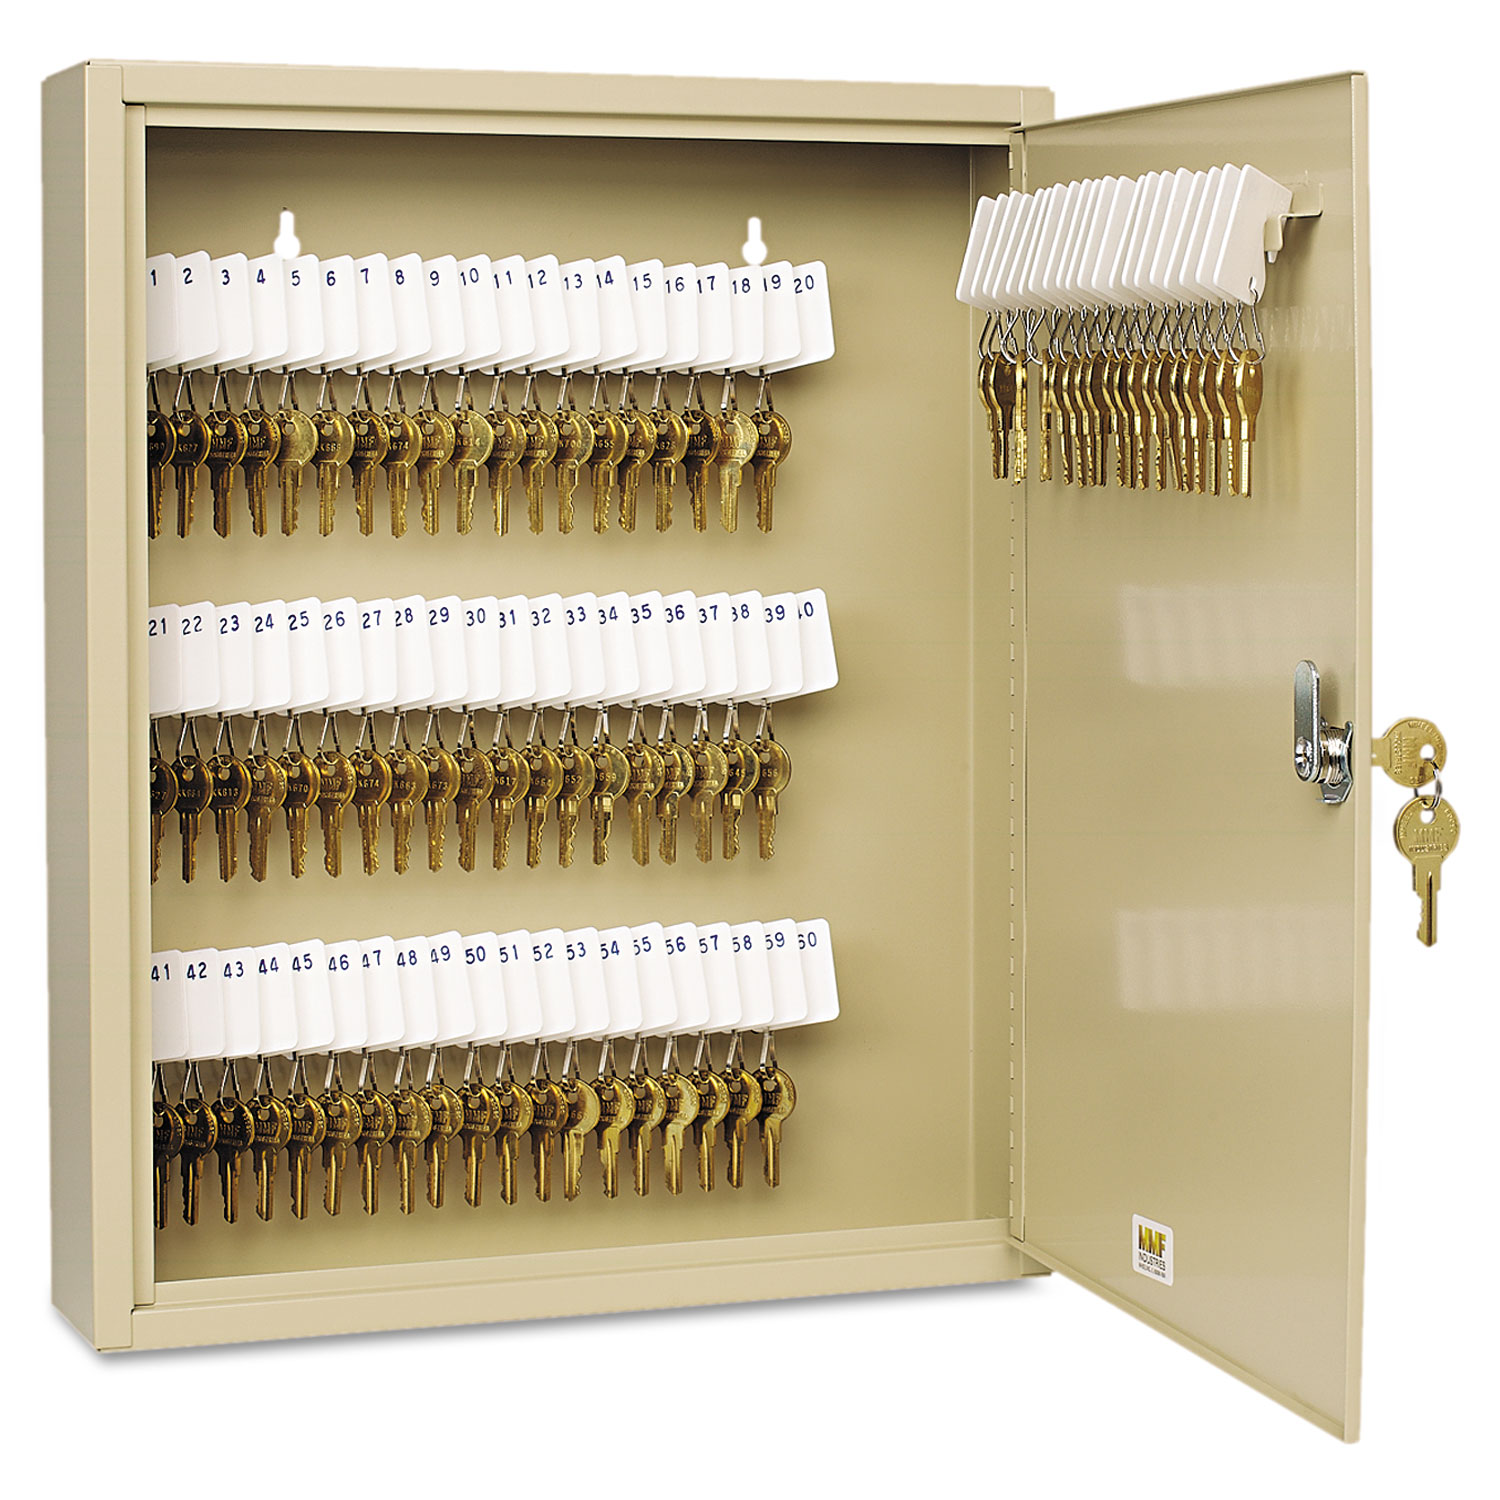 Uni-Tag Key Cabinet, 80-Key, Steel, Sand, 14 x 3 1/8 x 17 1/8